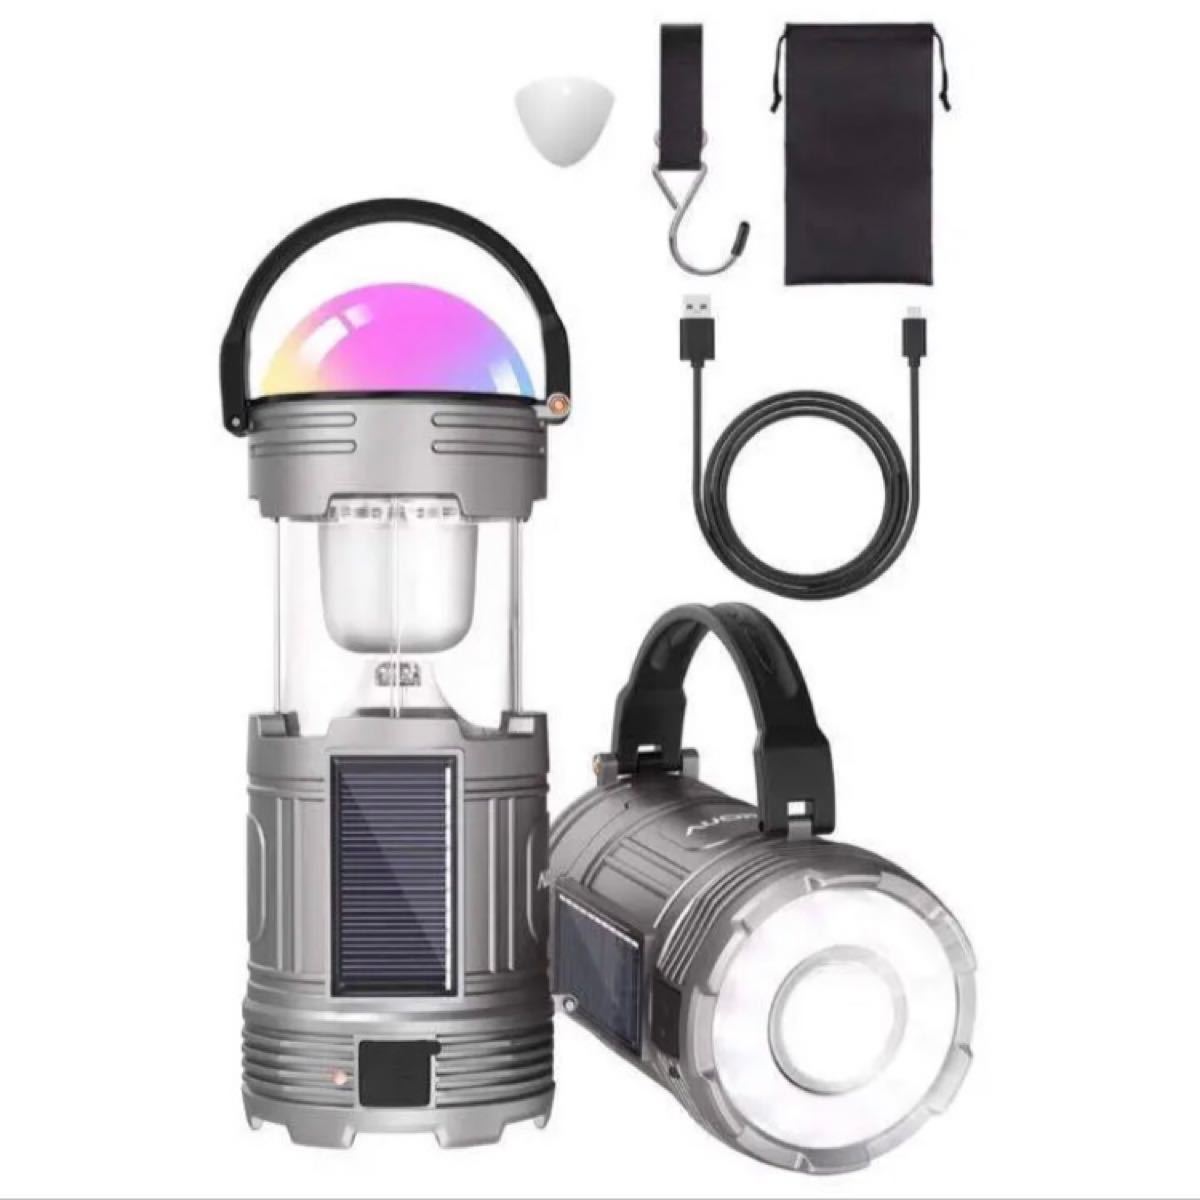 LEDランタン 懐中電灯 充電式 LEDライト USB充電 電池式